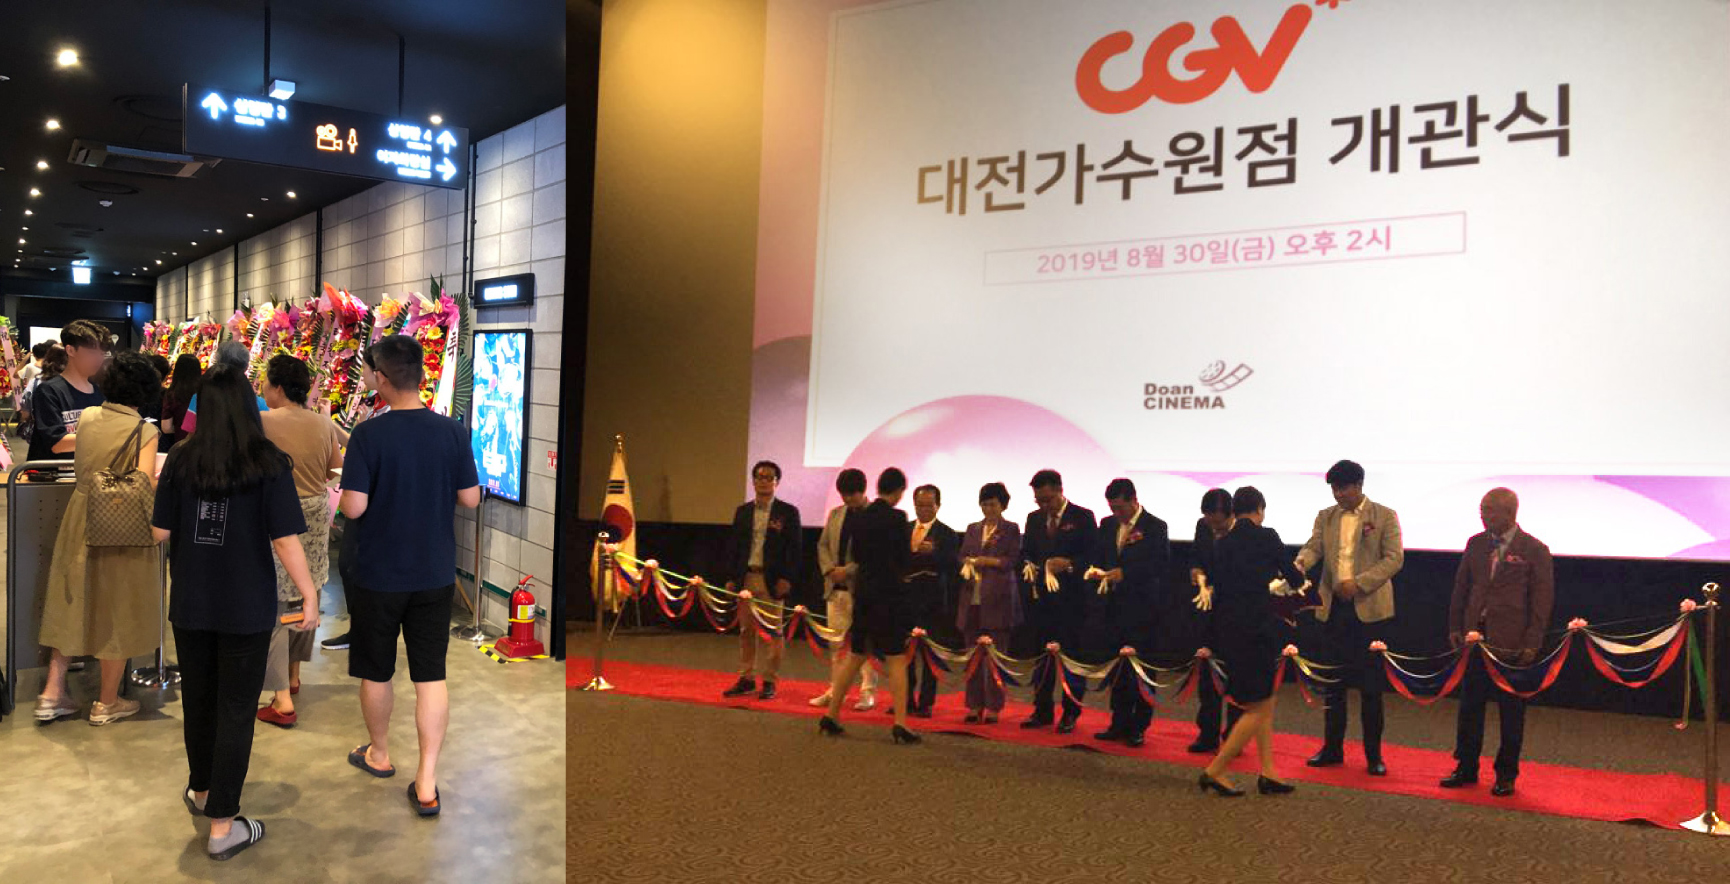 [사진] 30일(금) 대전광역시 도안신도시에서 진행된 'CGV가수원점' 개관  행사가 성료했다.